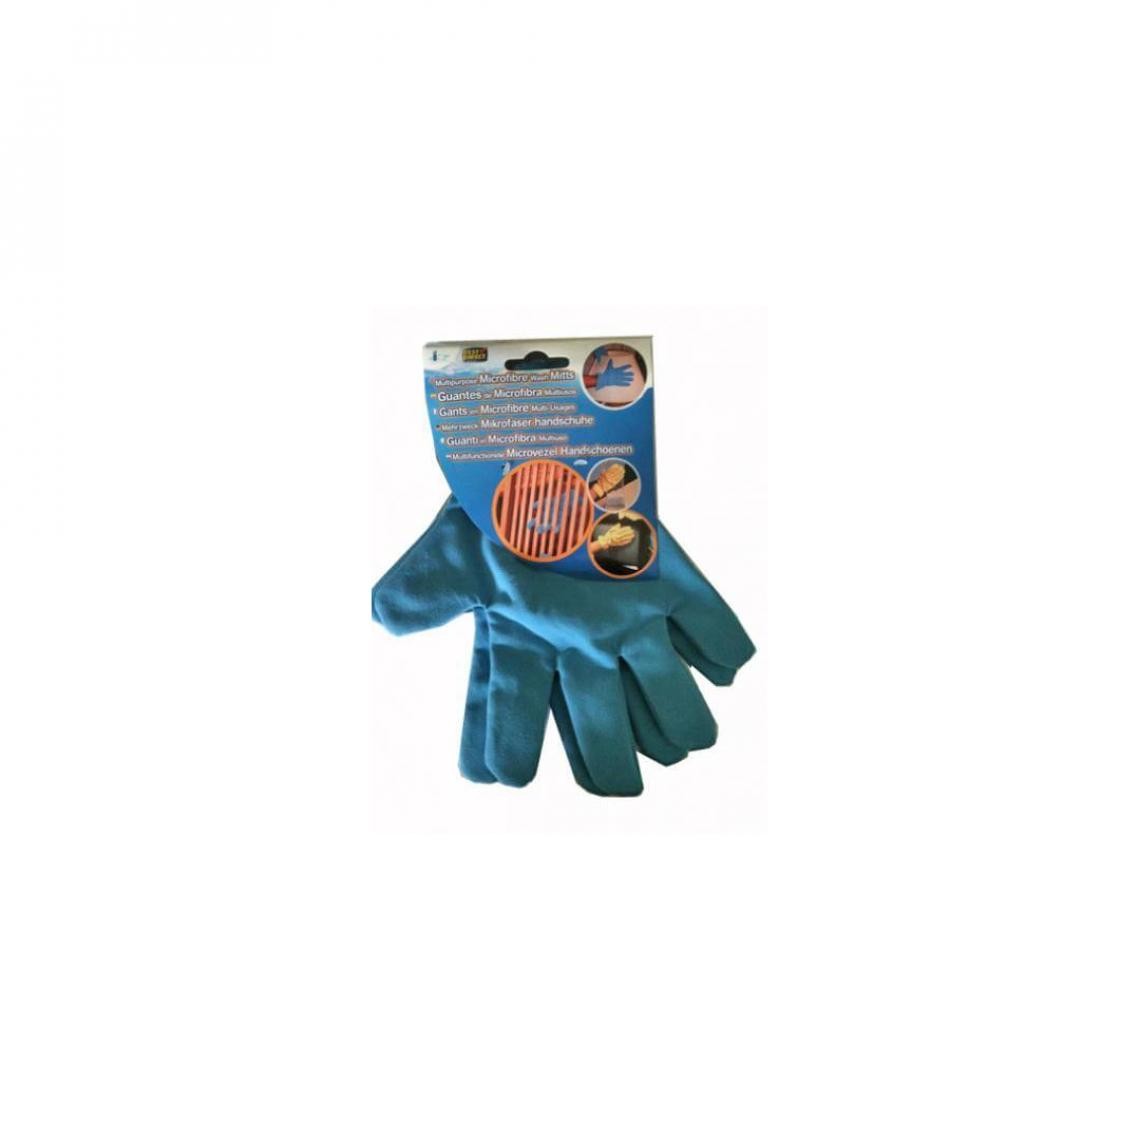 Venteo - Les 2 gants microfibre 5 doigts - Gants microfibre multi-usages, retire la poussière, lavable en machine - Taille unique - Aspirateur balai